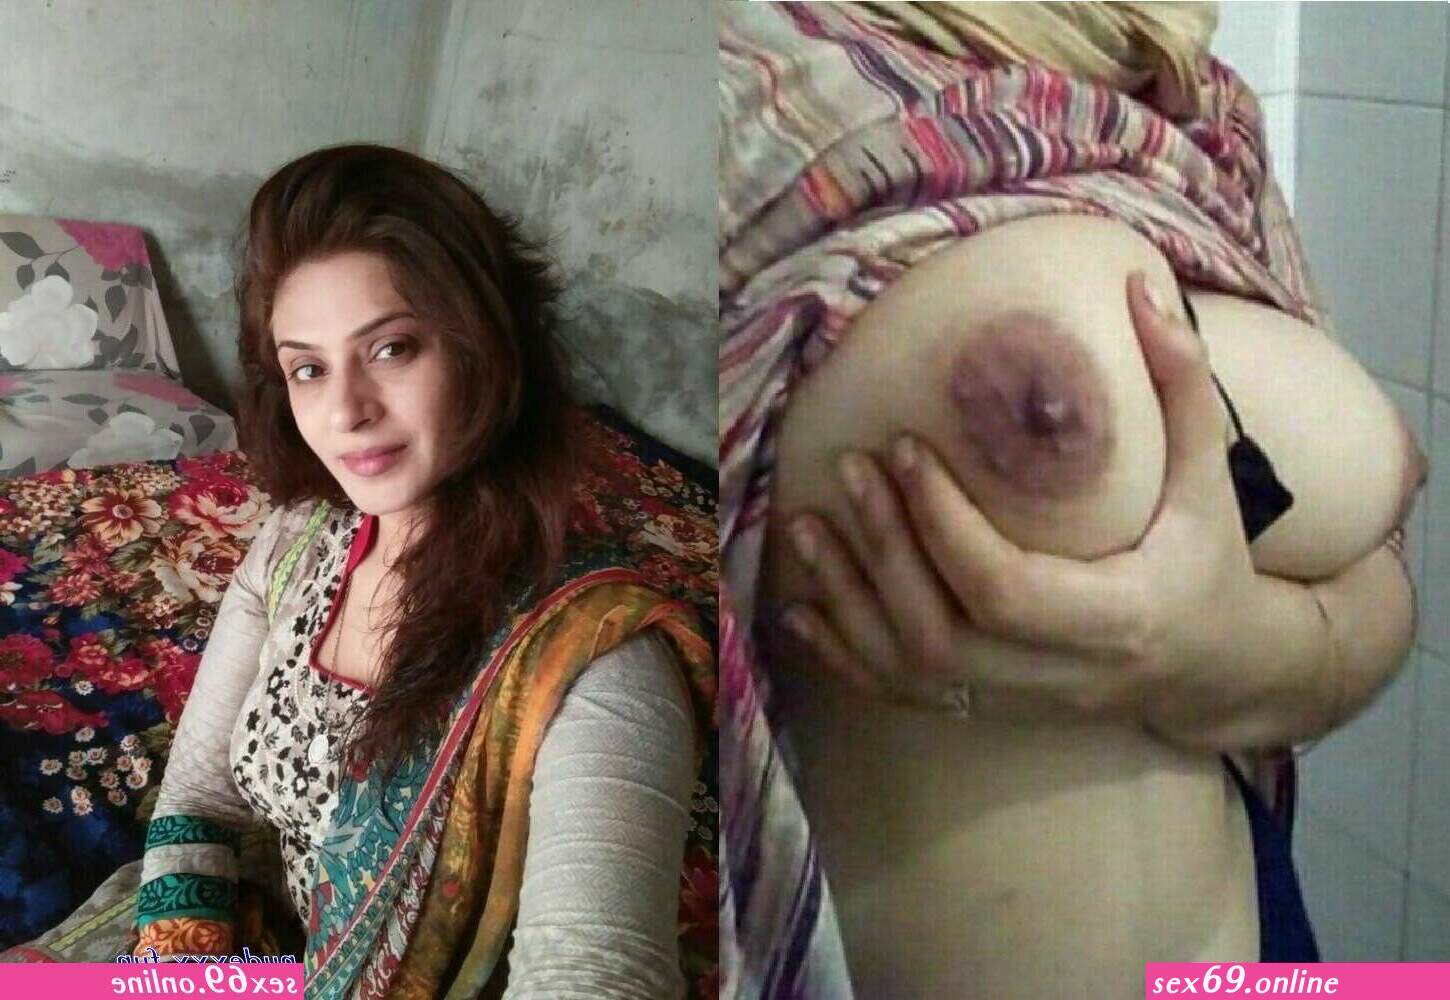 1450px x 1000px - pakistani leaked xnxx - Sexy photos